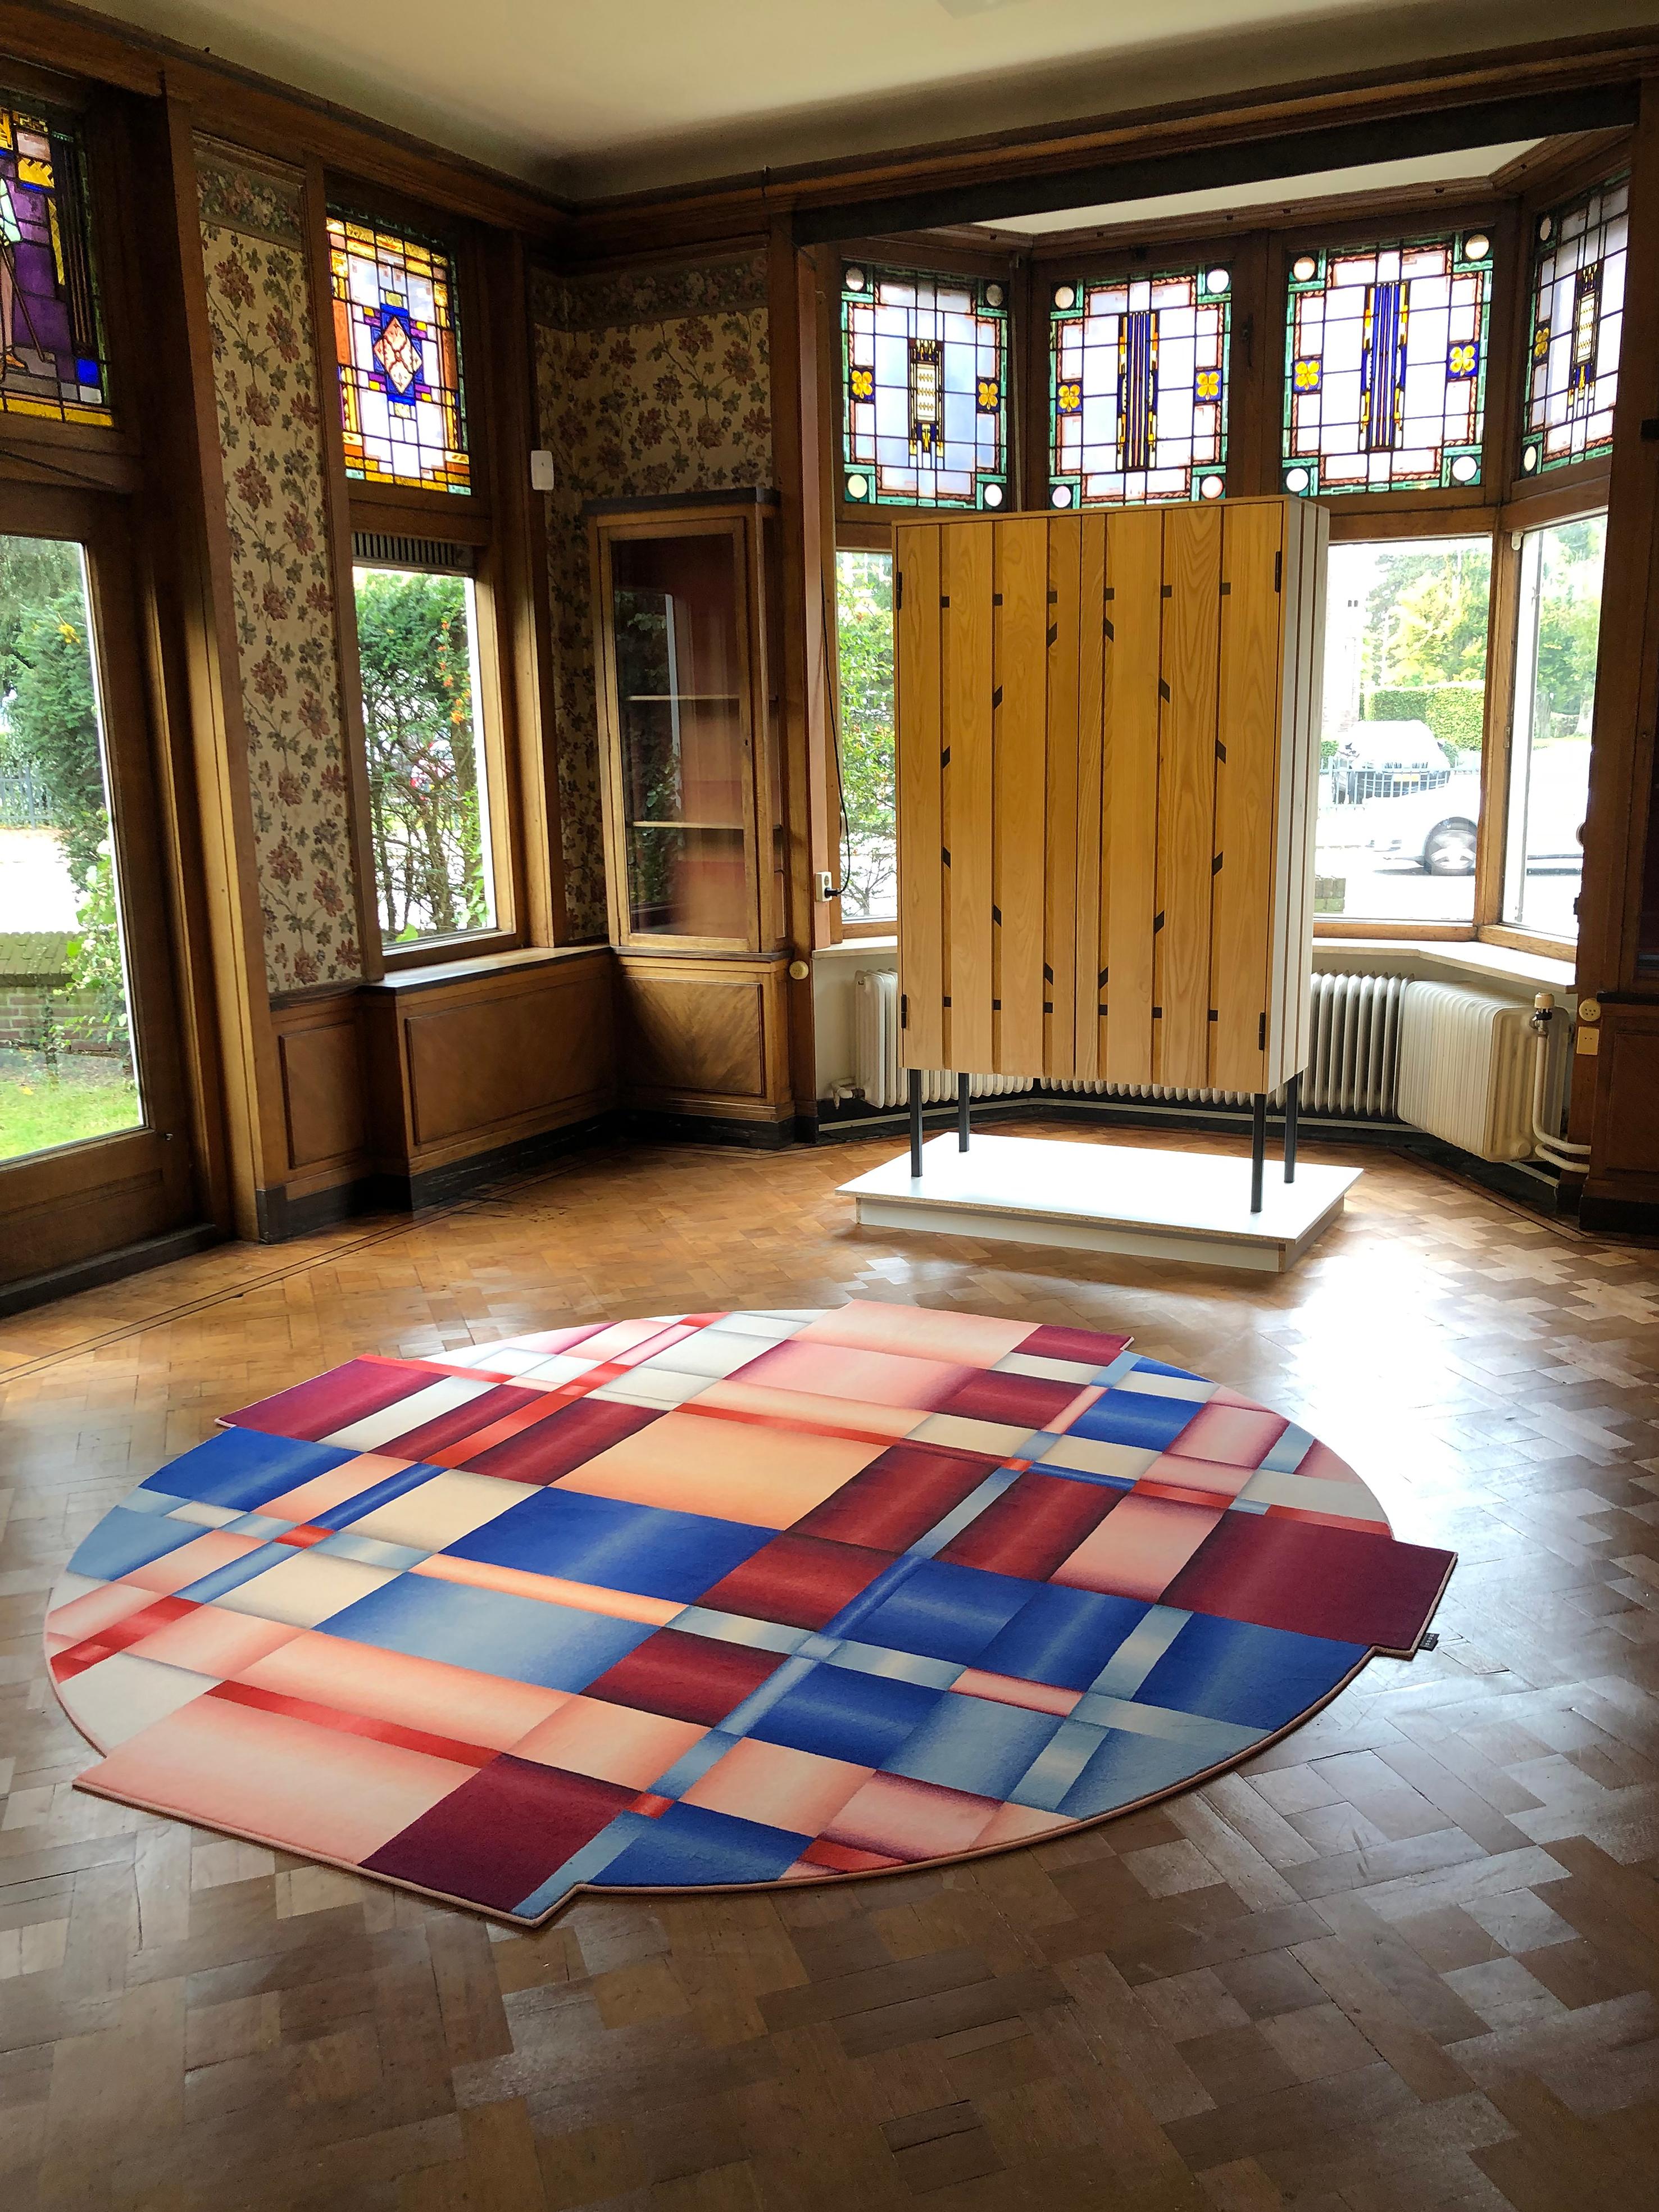 Moooi Lint Magenta tapis rond en laine avec finition de l'ourlet aveugle par Visser & Meijwaard

Visser & Meijwaard est un studio de design spécialisé dans la conception de produits et d'expositions scénographiques, basé à Arnhem, aux Pays-Bas. Le